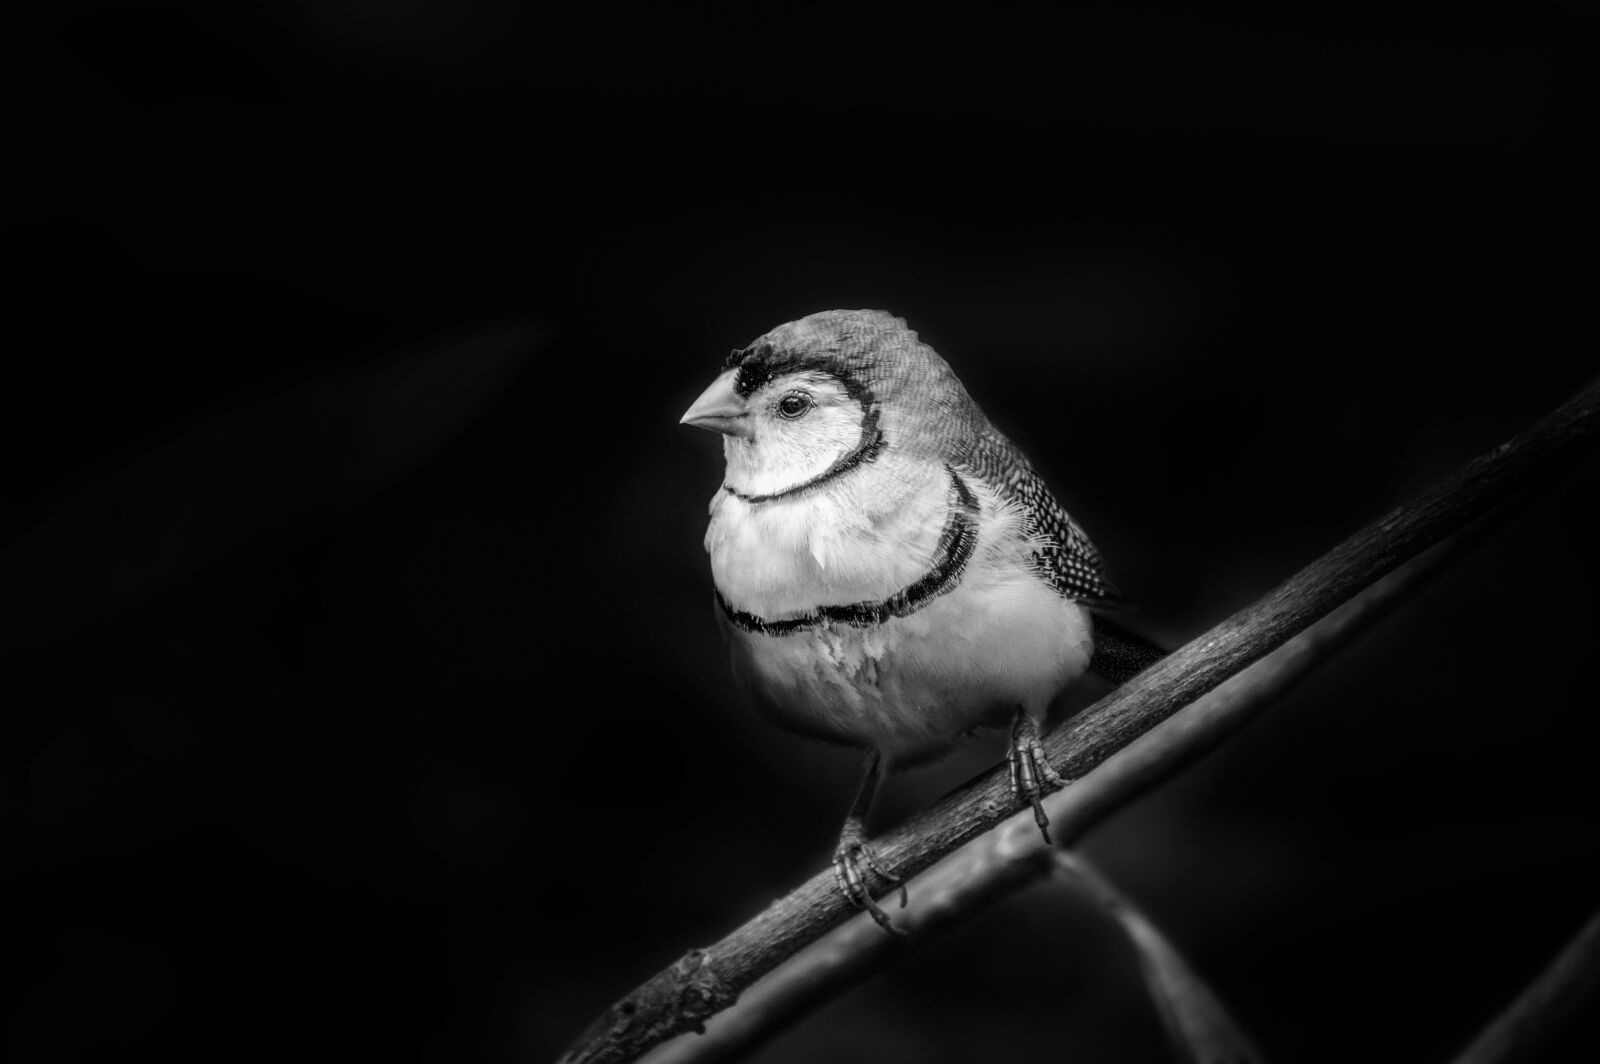 Nikon D3200 sample photo. Bird, nature, wildlife photography